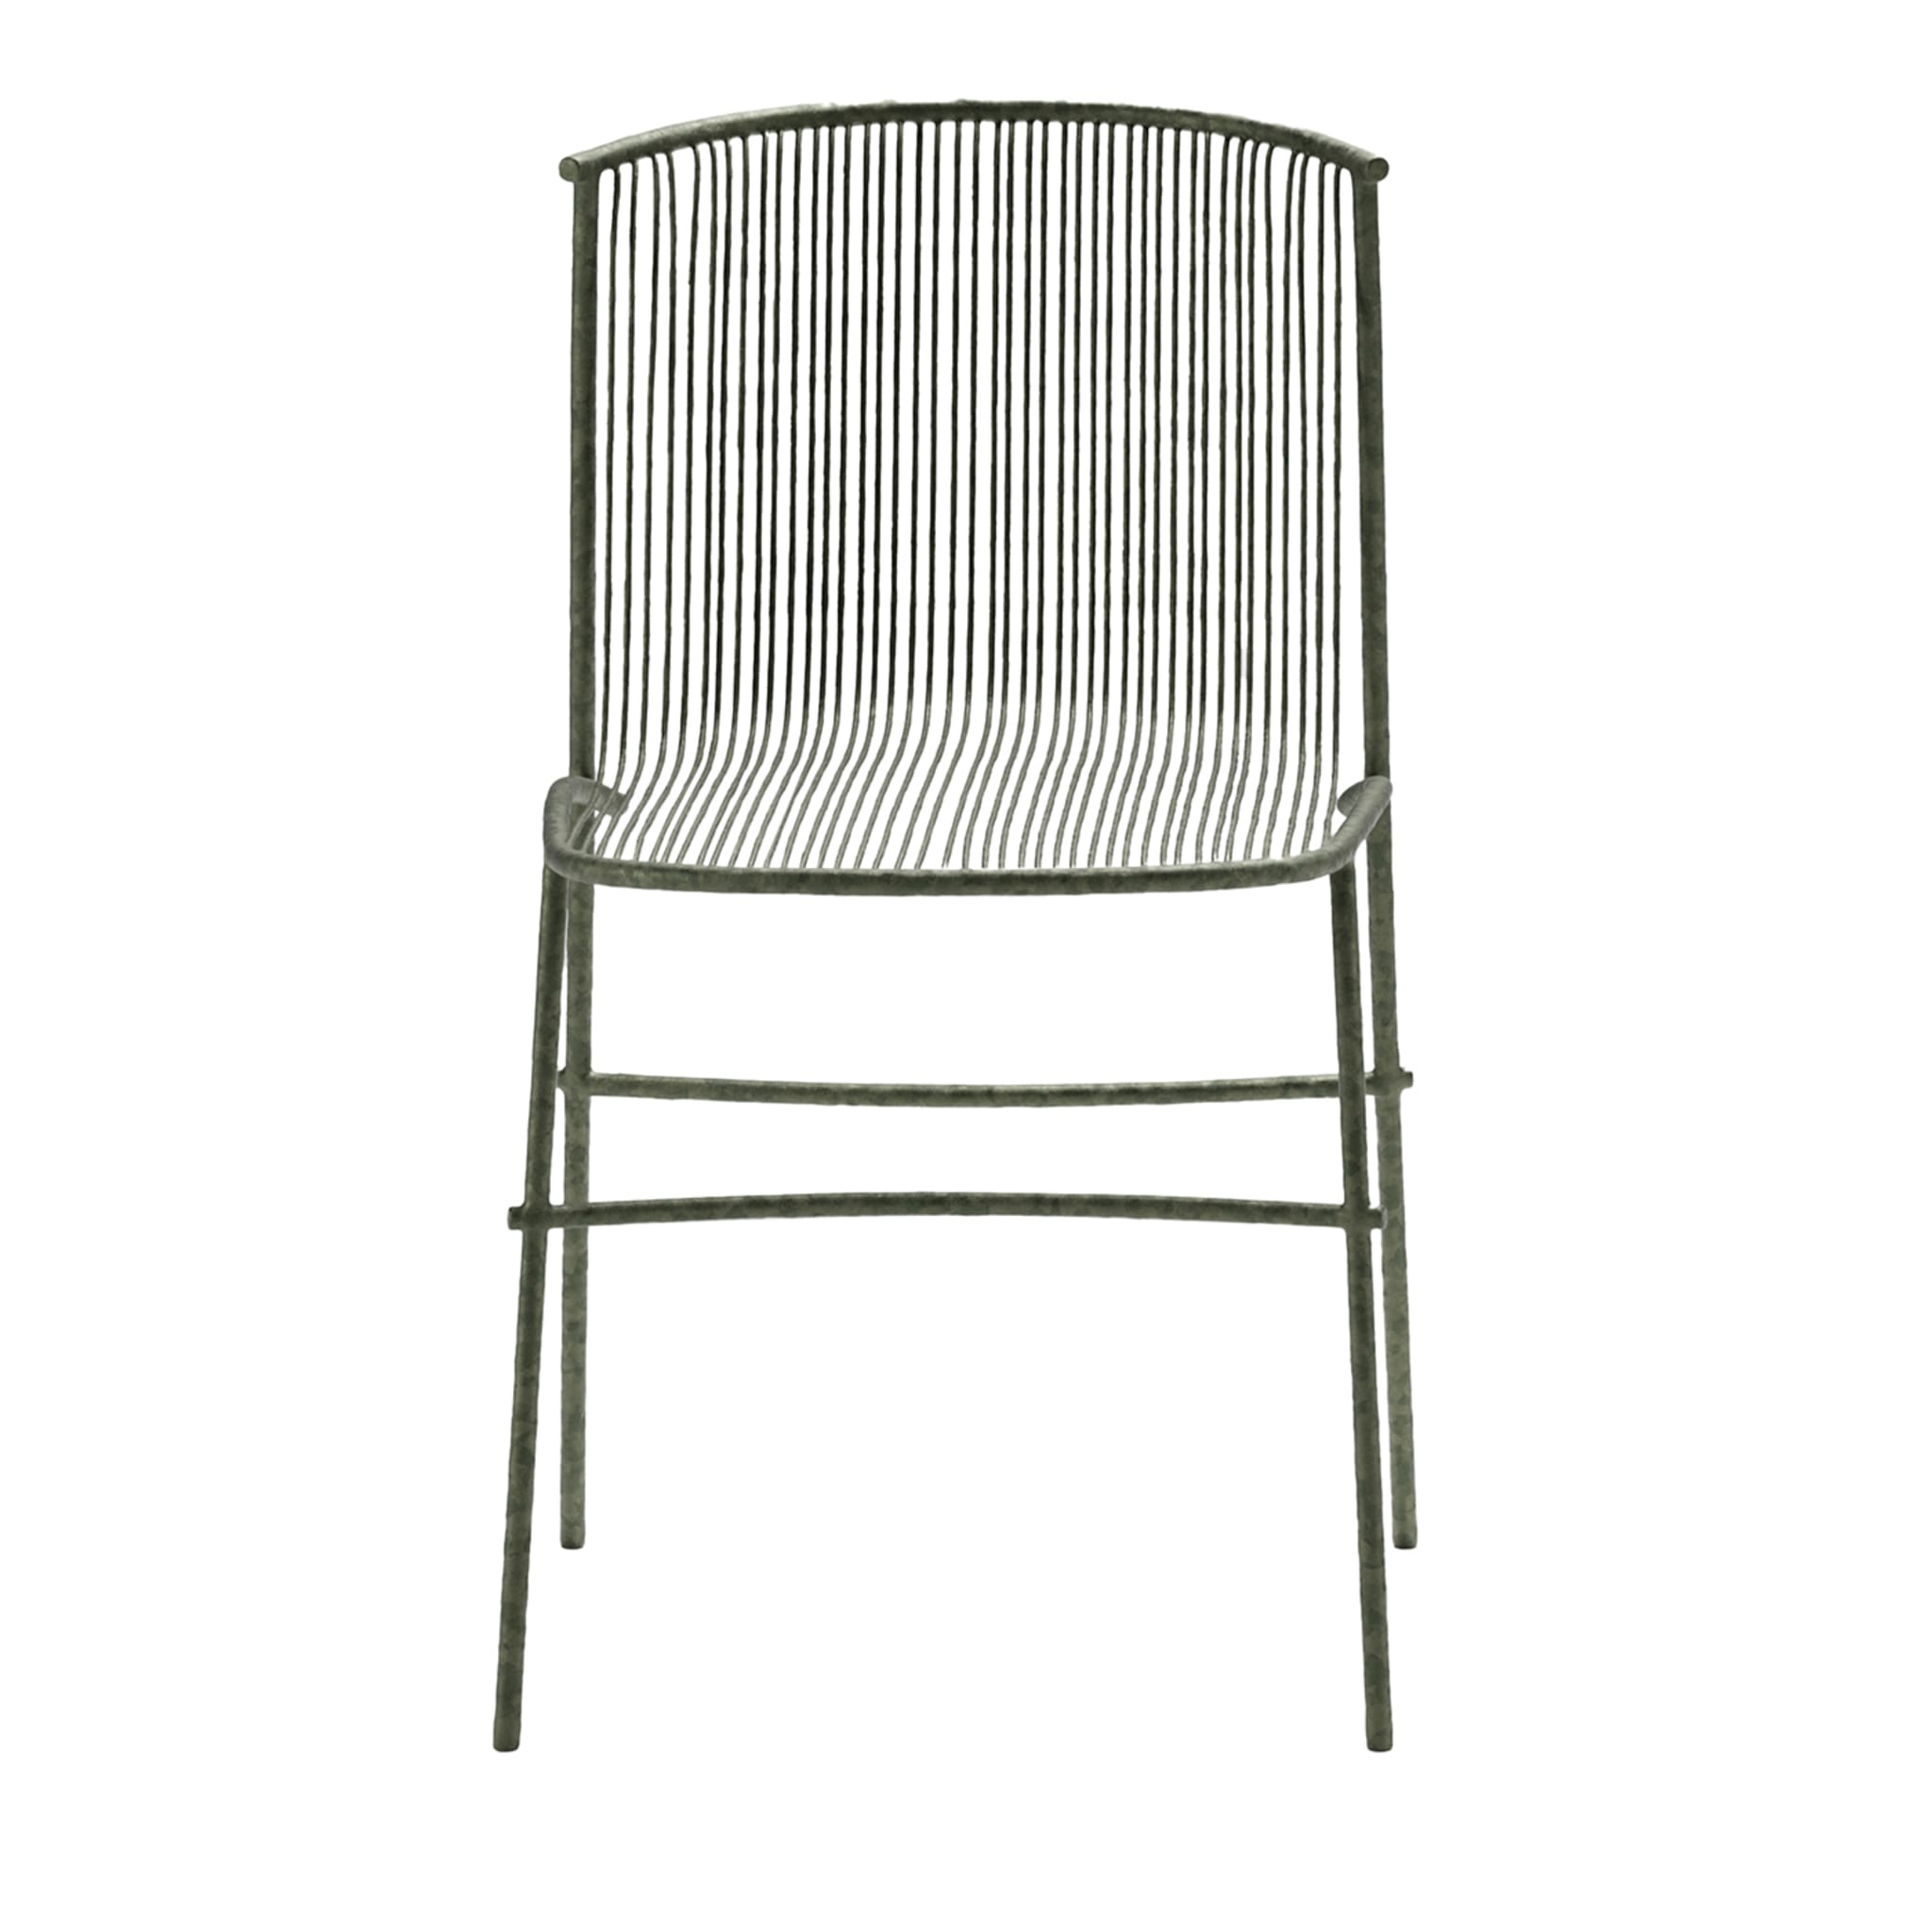 Bambusae Chair by Zanellato/Bortotto - Main view